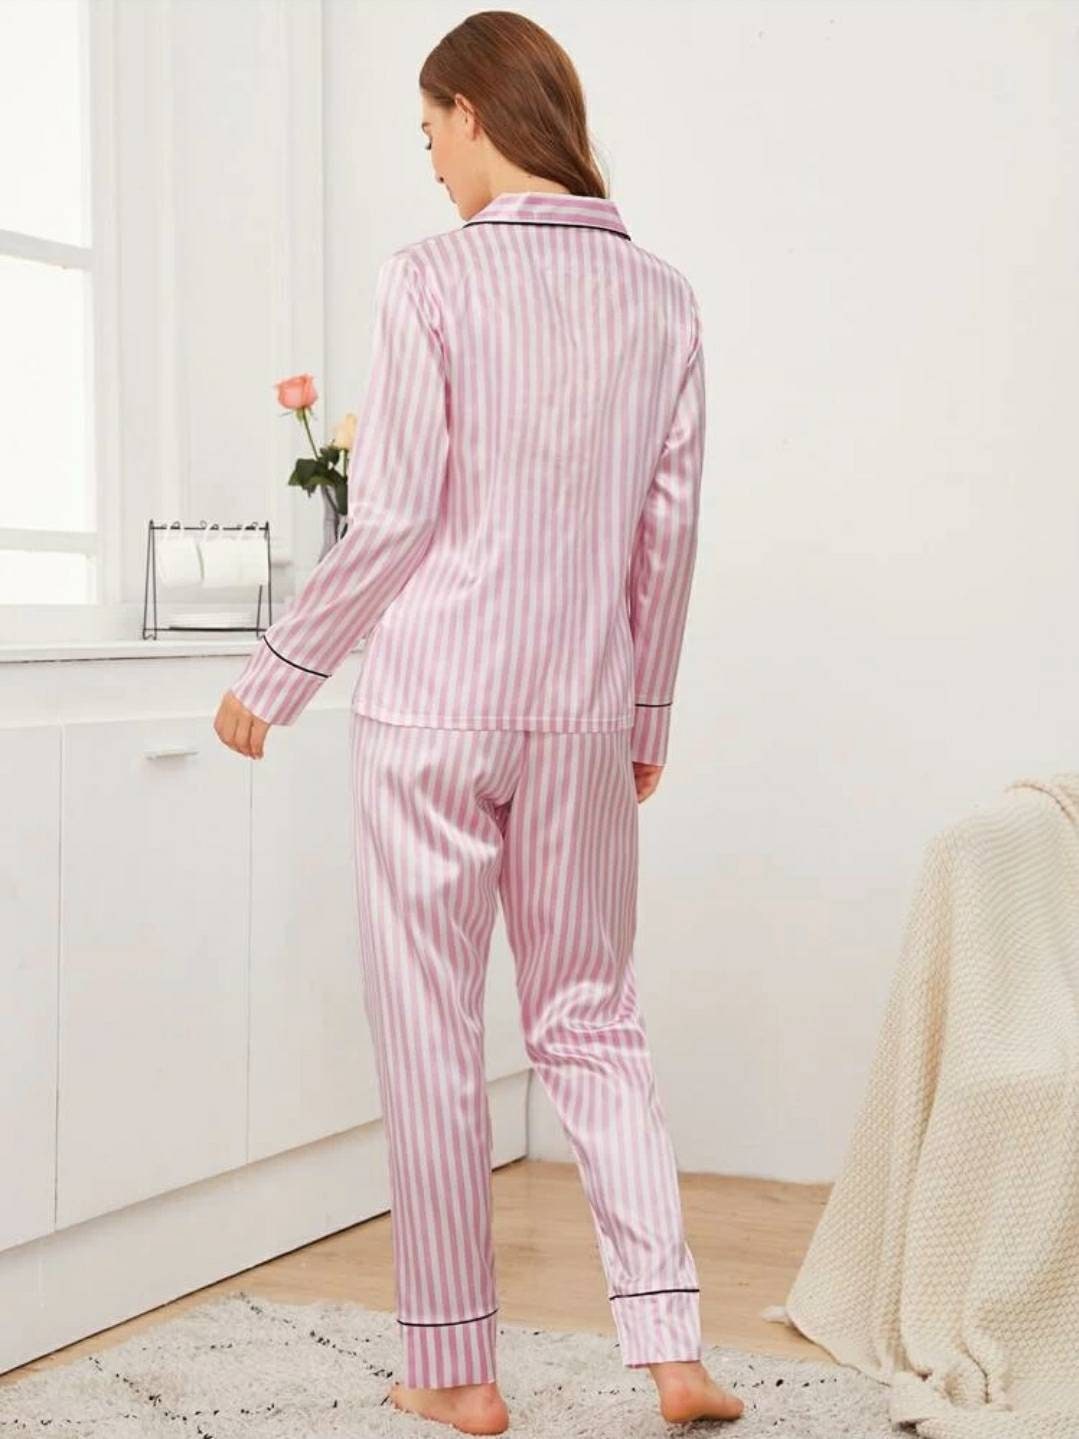 Personalised satin pyjamas pink striped pyjamas birthday | Etsy